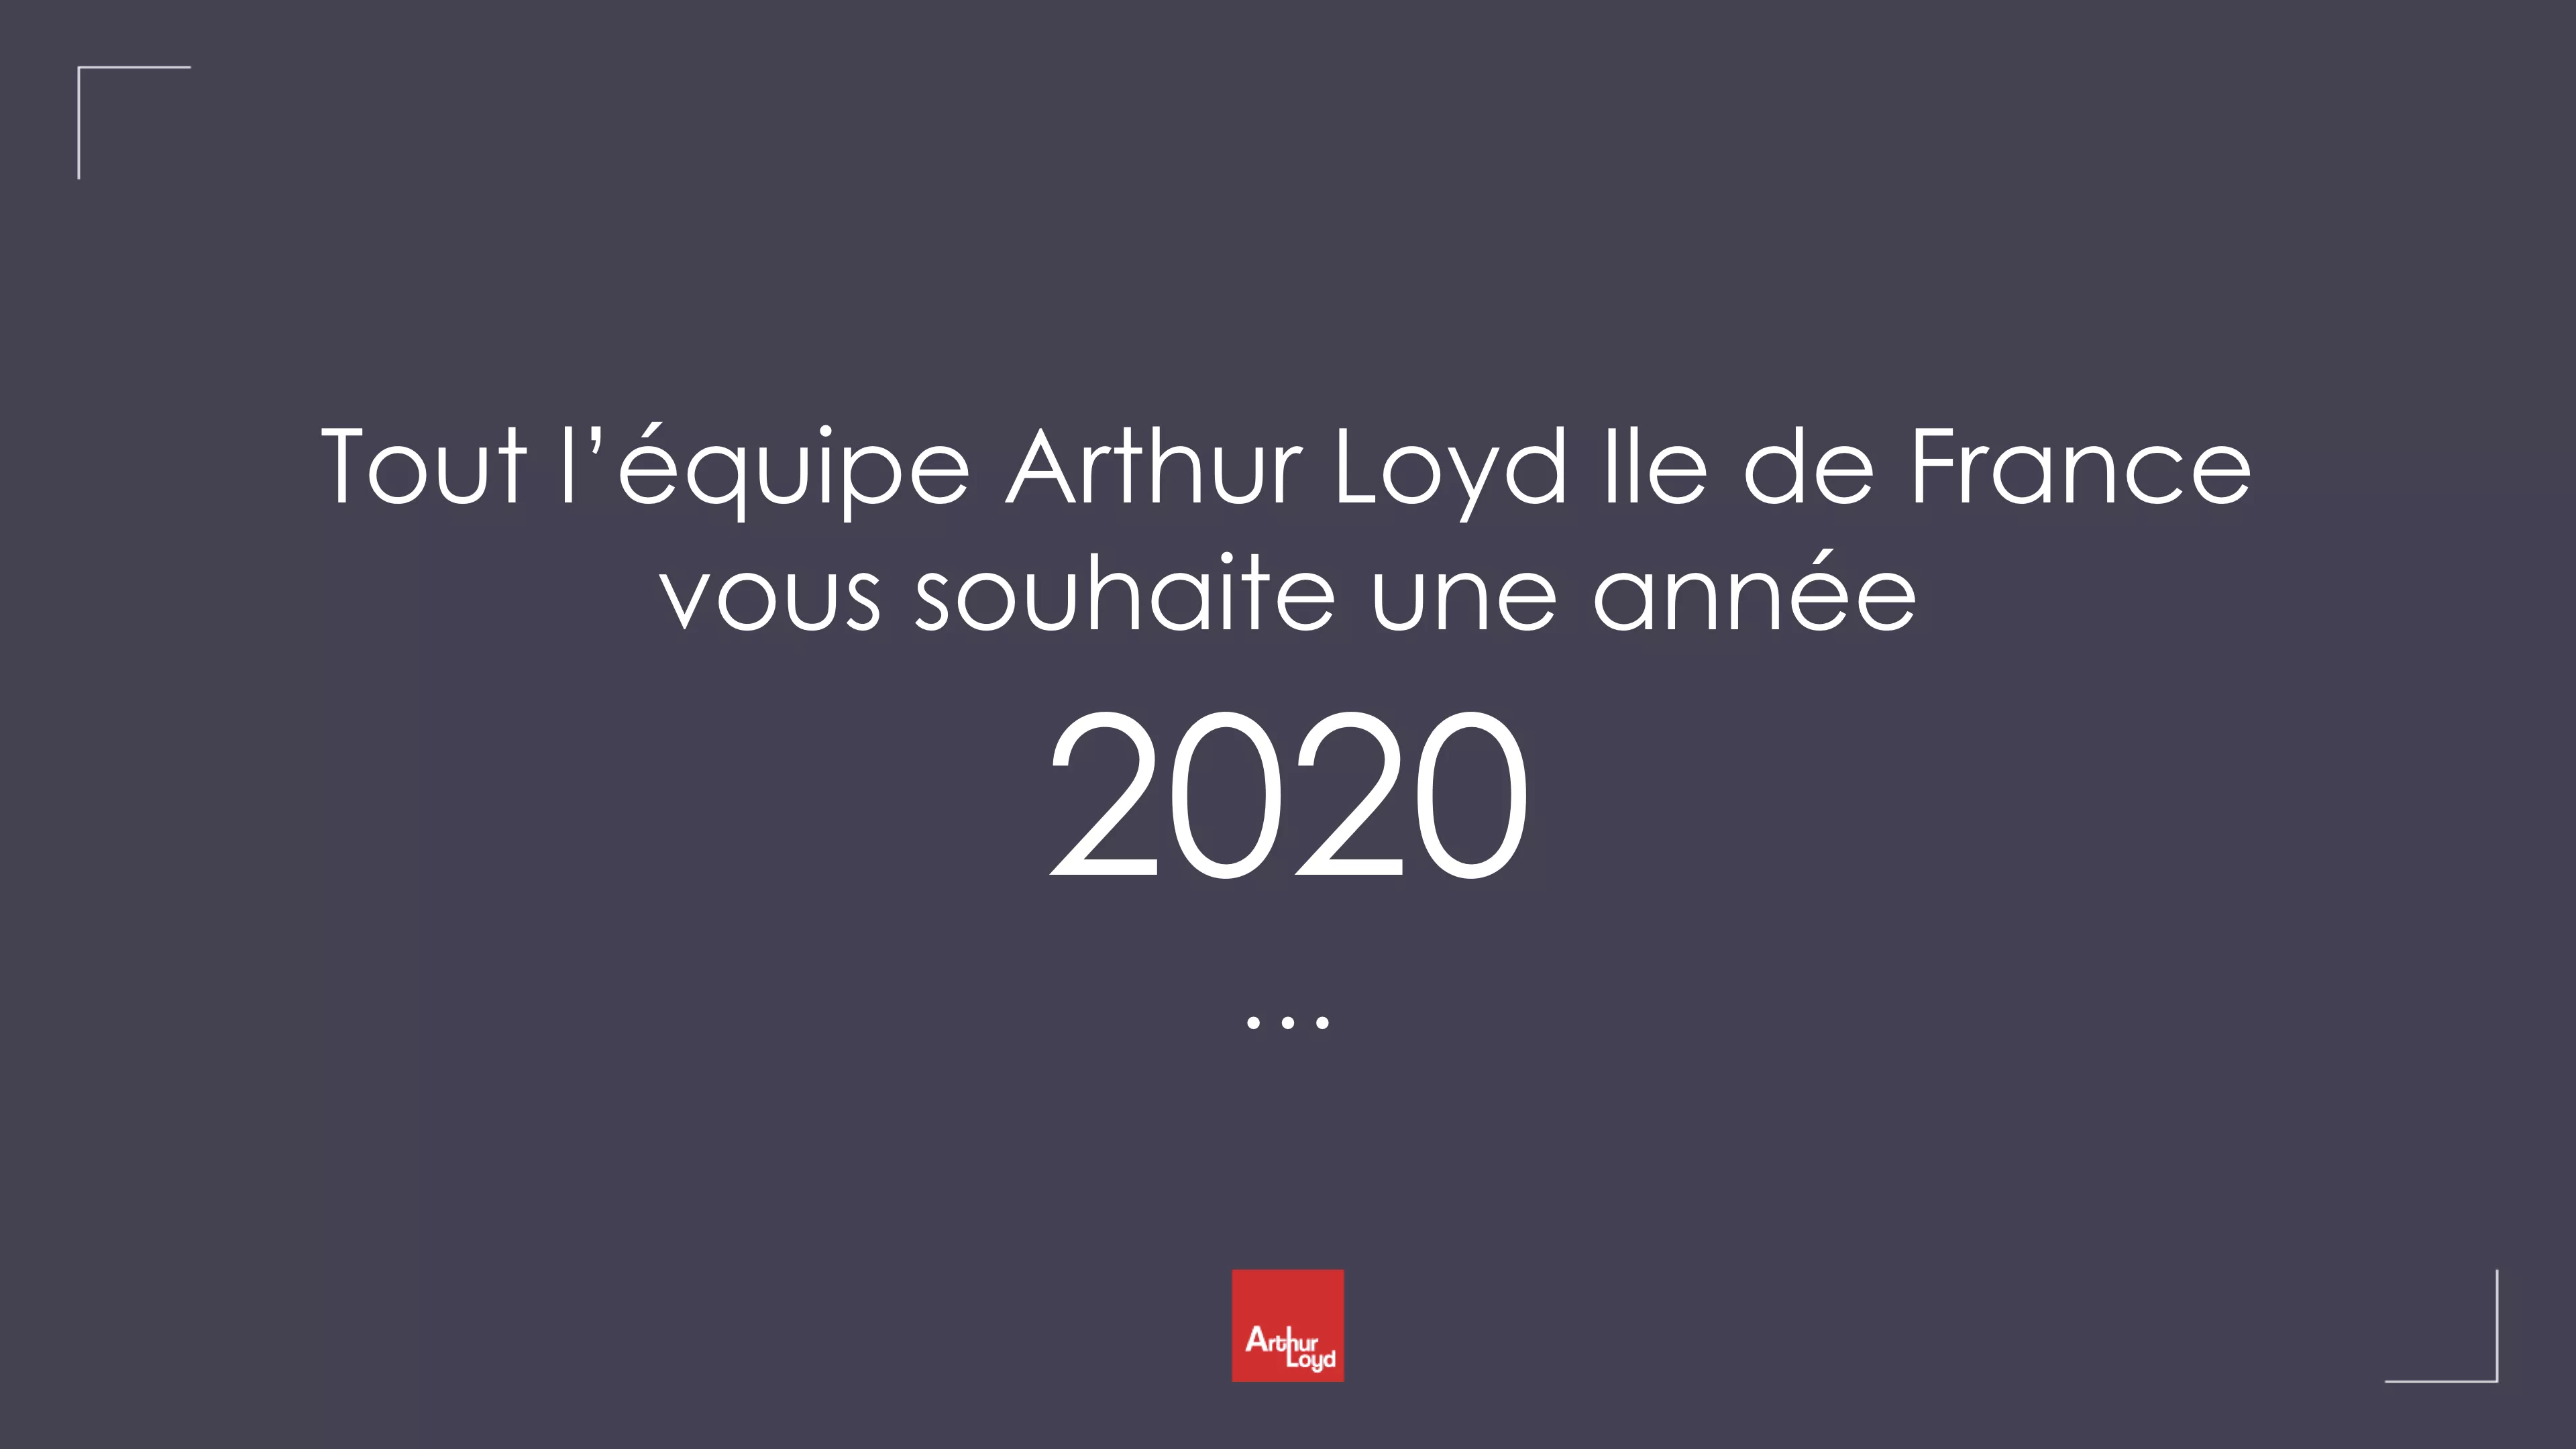 couverture voeux 2020 Paris